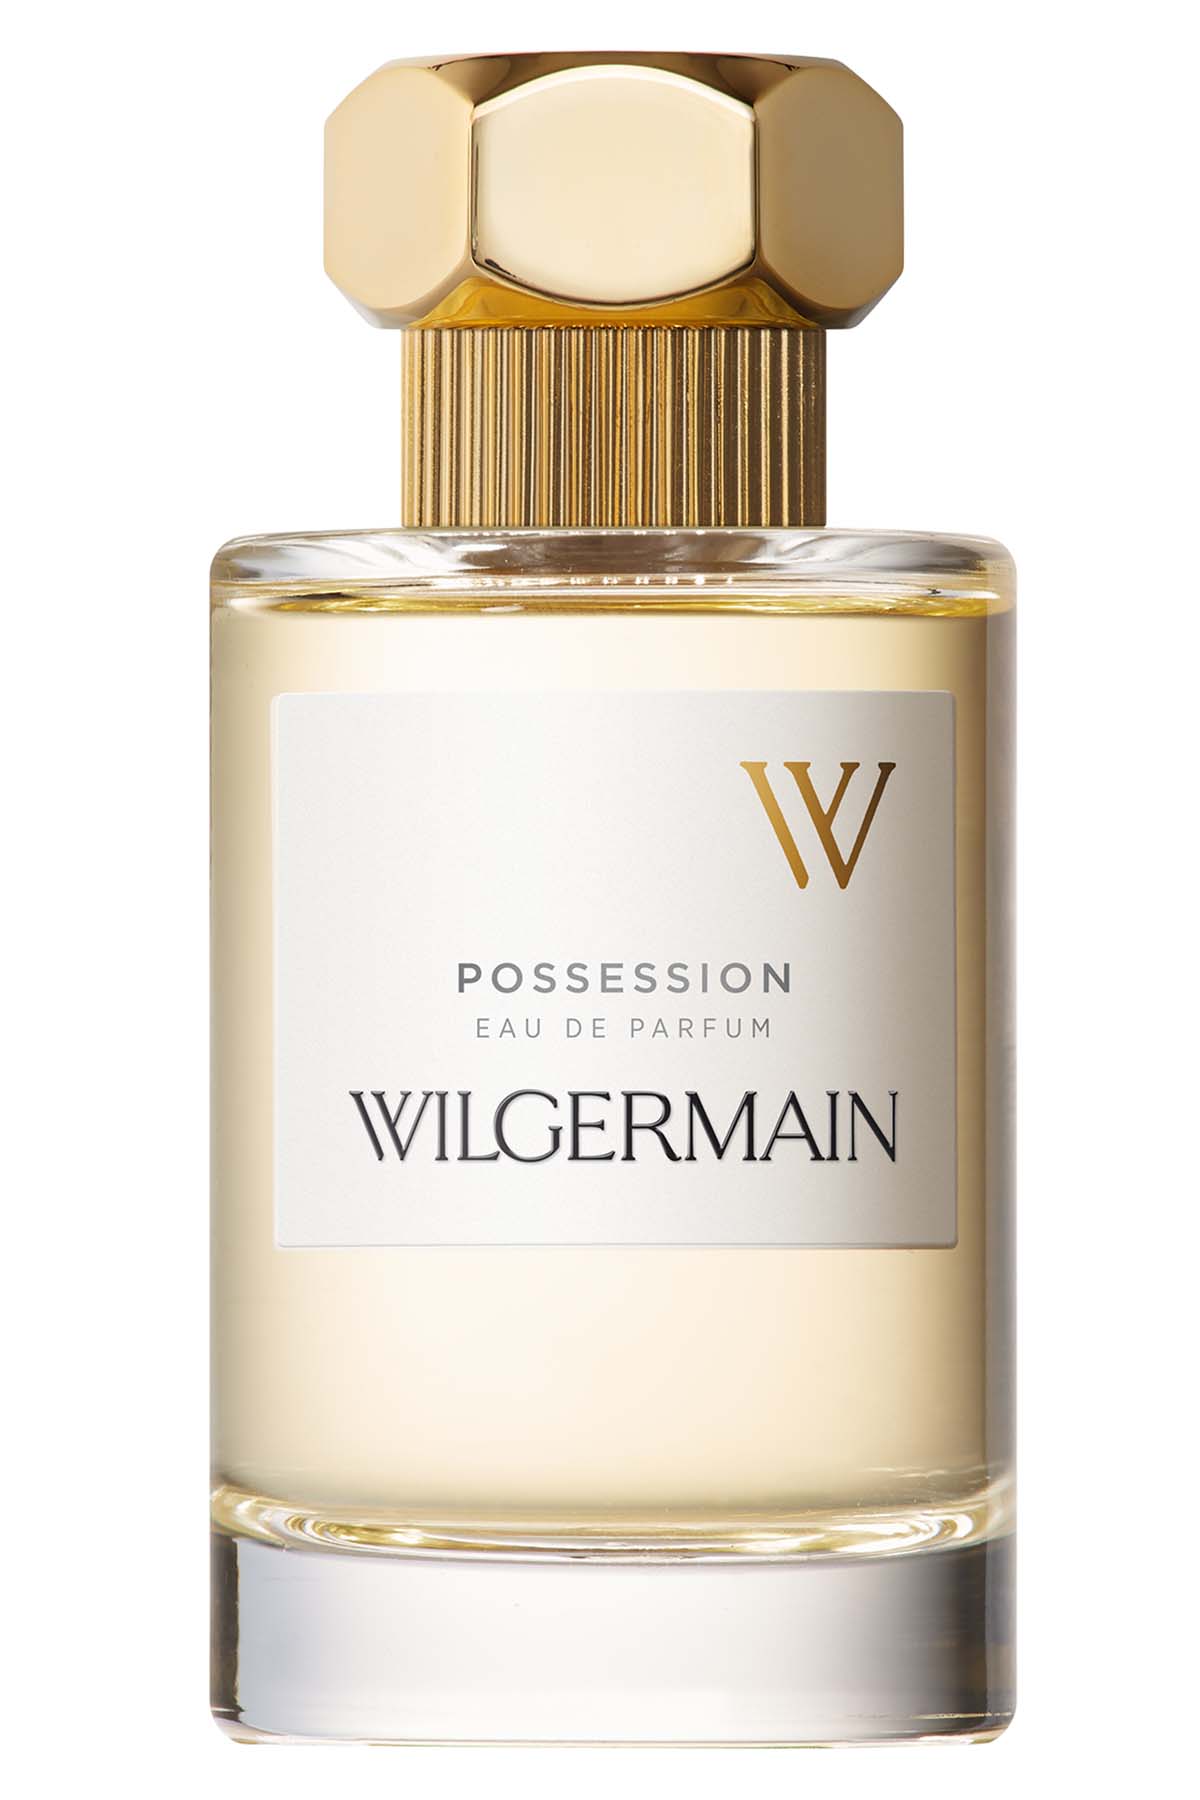 Wilgermain Possession Eau de Parfum